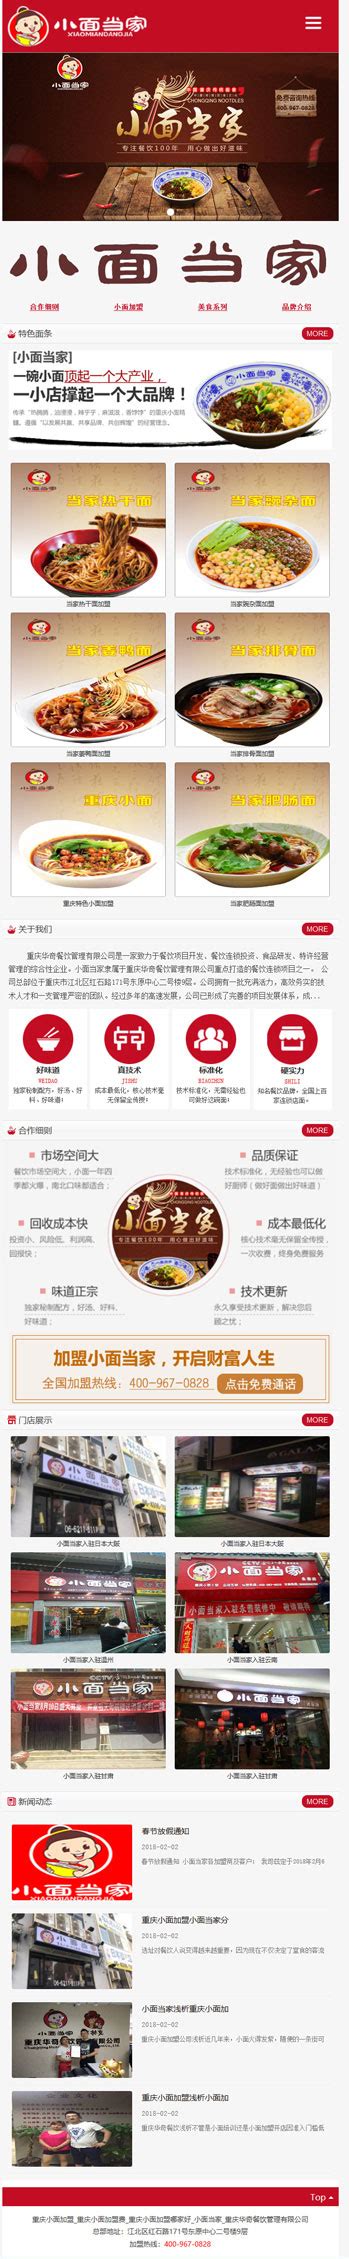 重庆网站建设 重庆网站开发 重庆网站制作公司高清大图